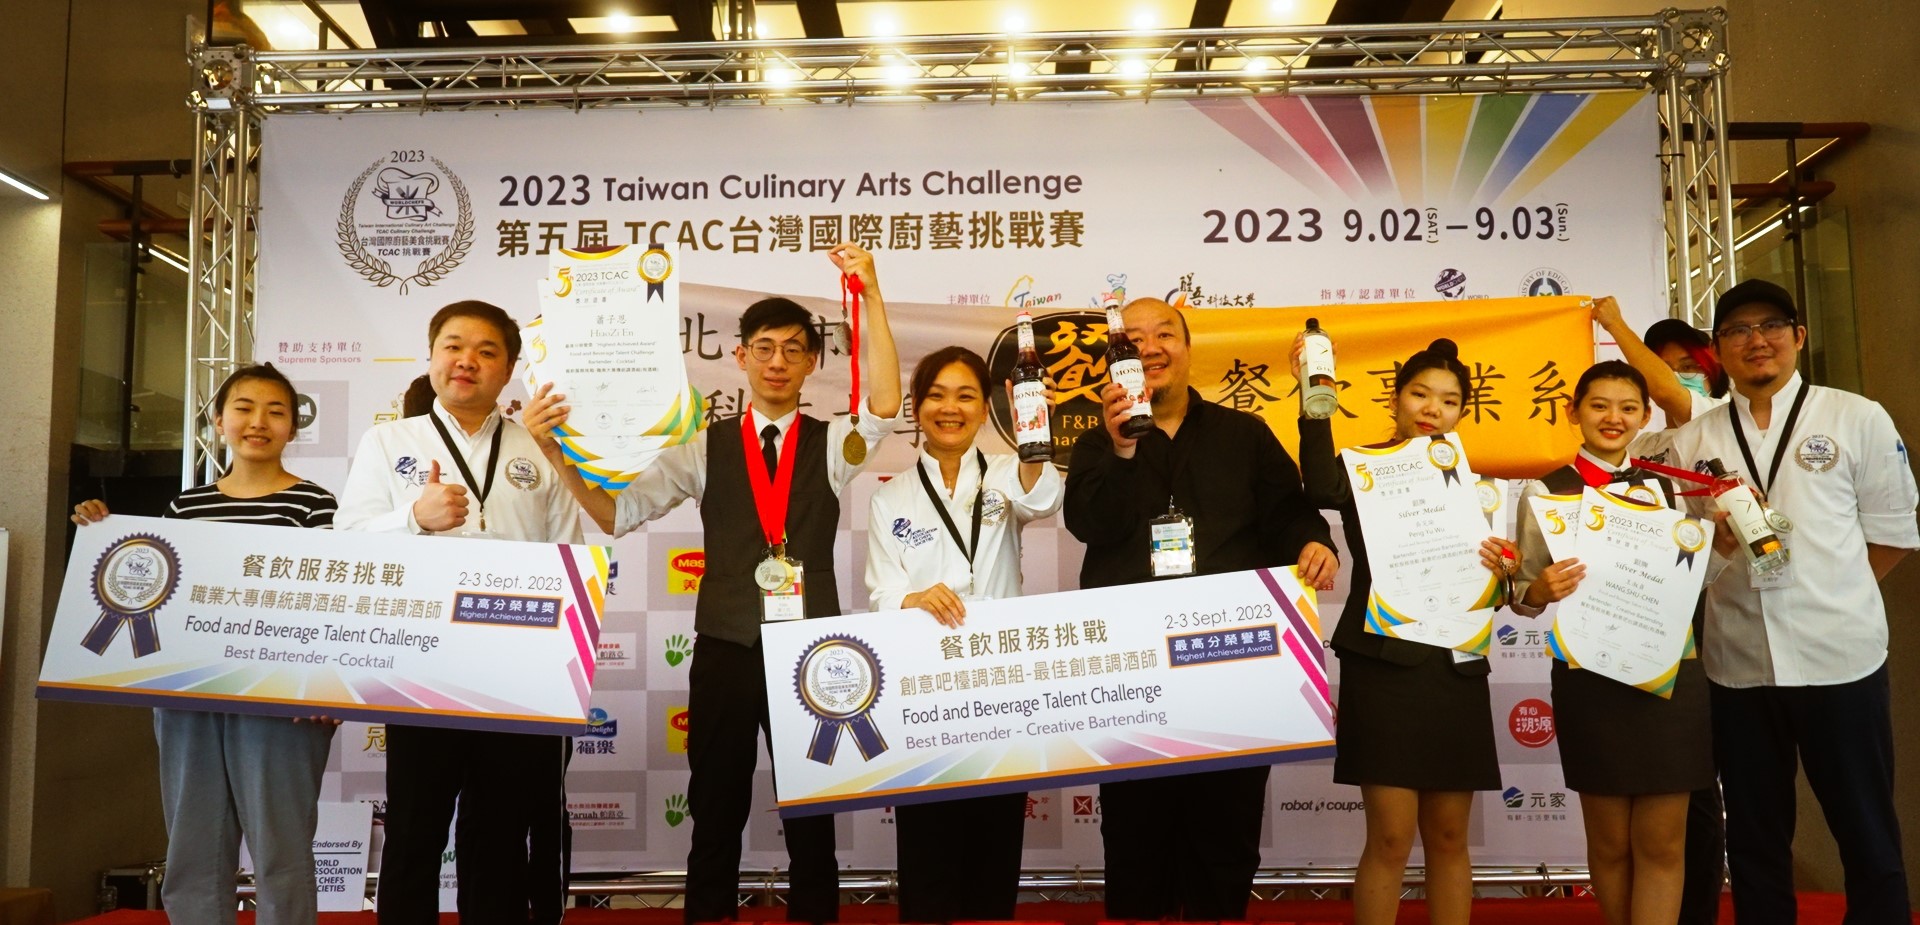 開元食品共同參與2023 TCAC國際廚藝美食挑戰賽 培育餐飲產業未來人才